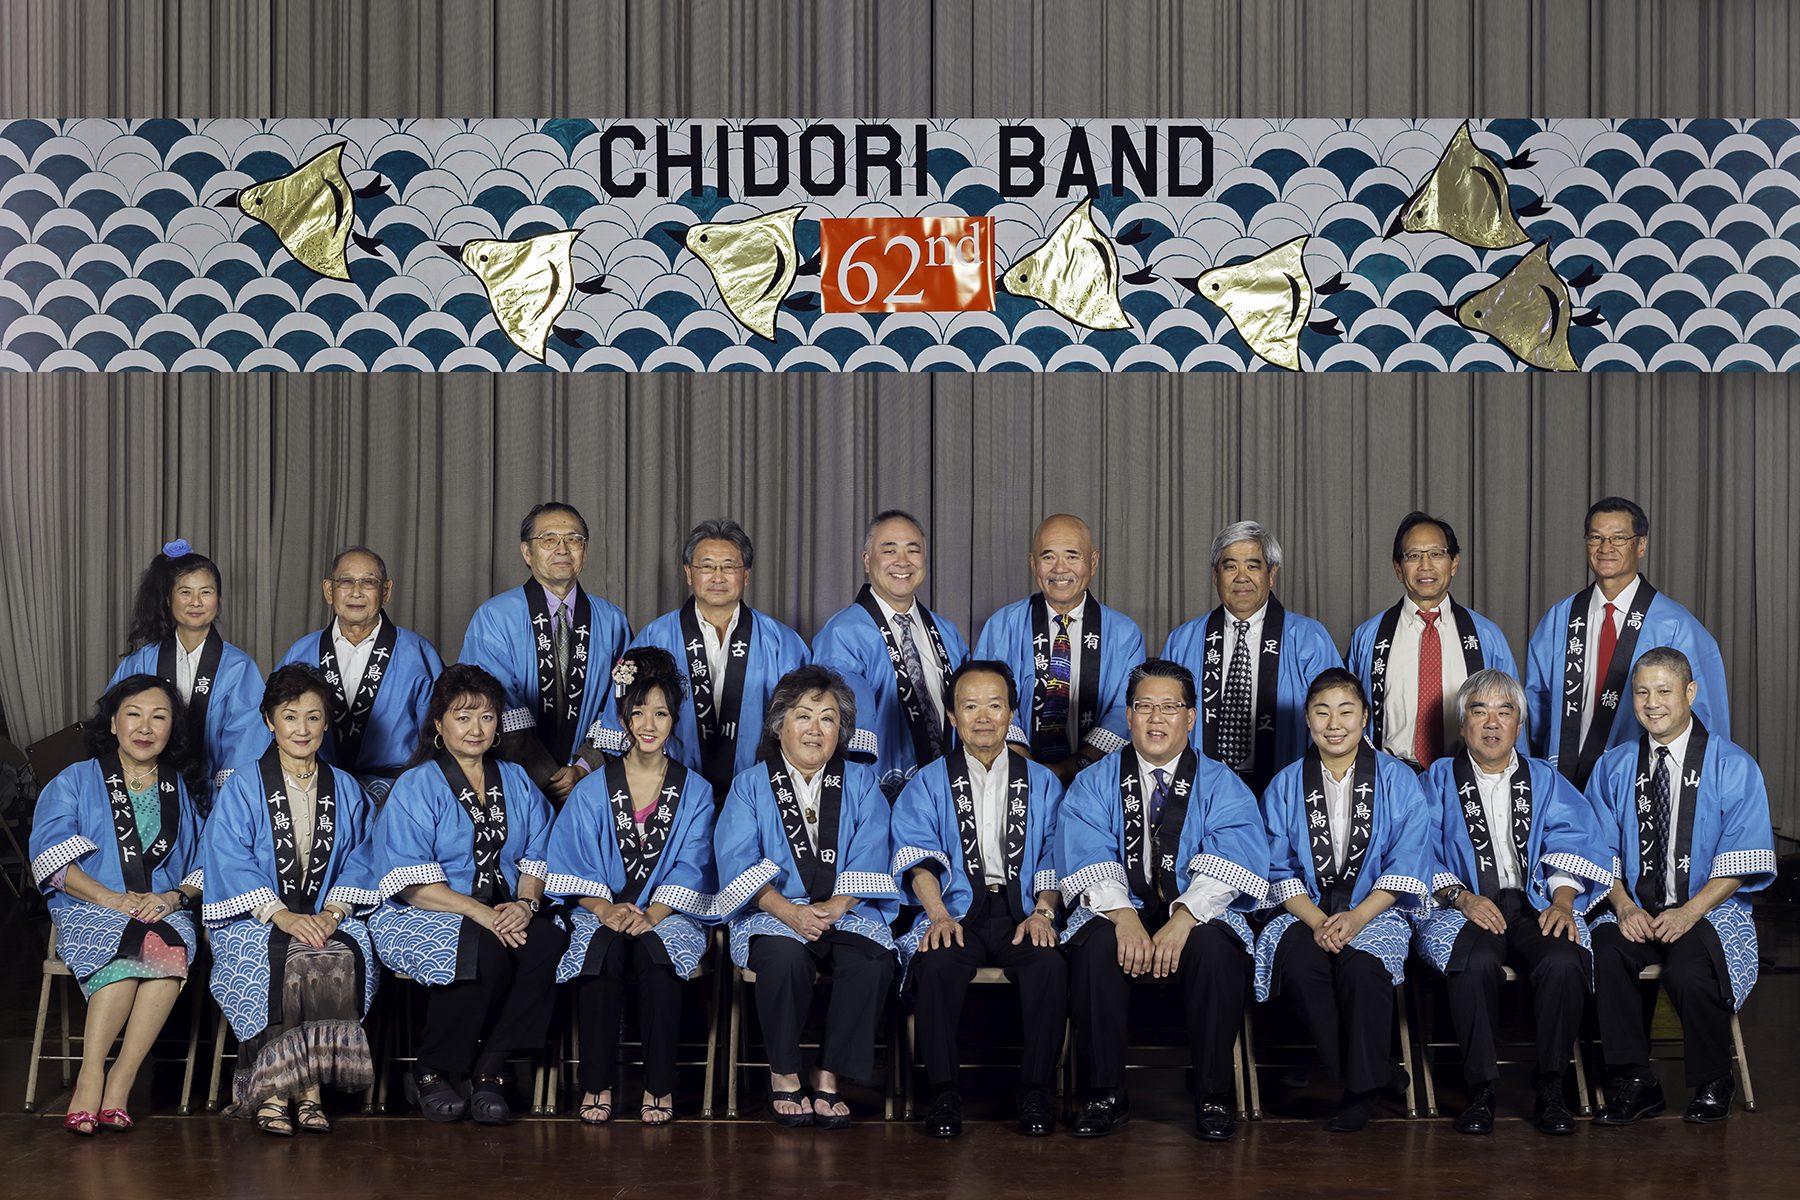 Chidori Band’s Fall Concert in San Jose